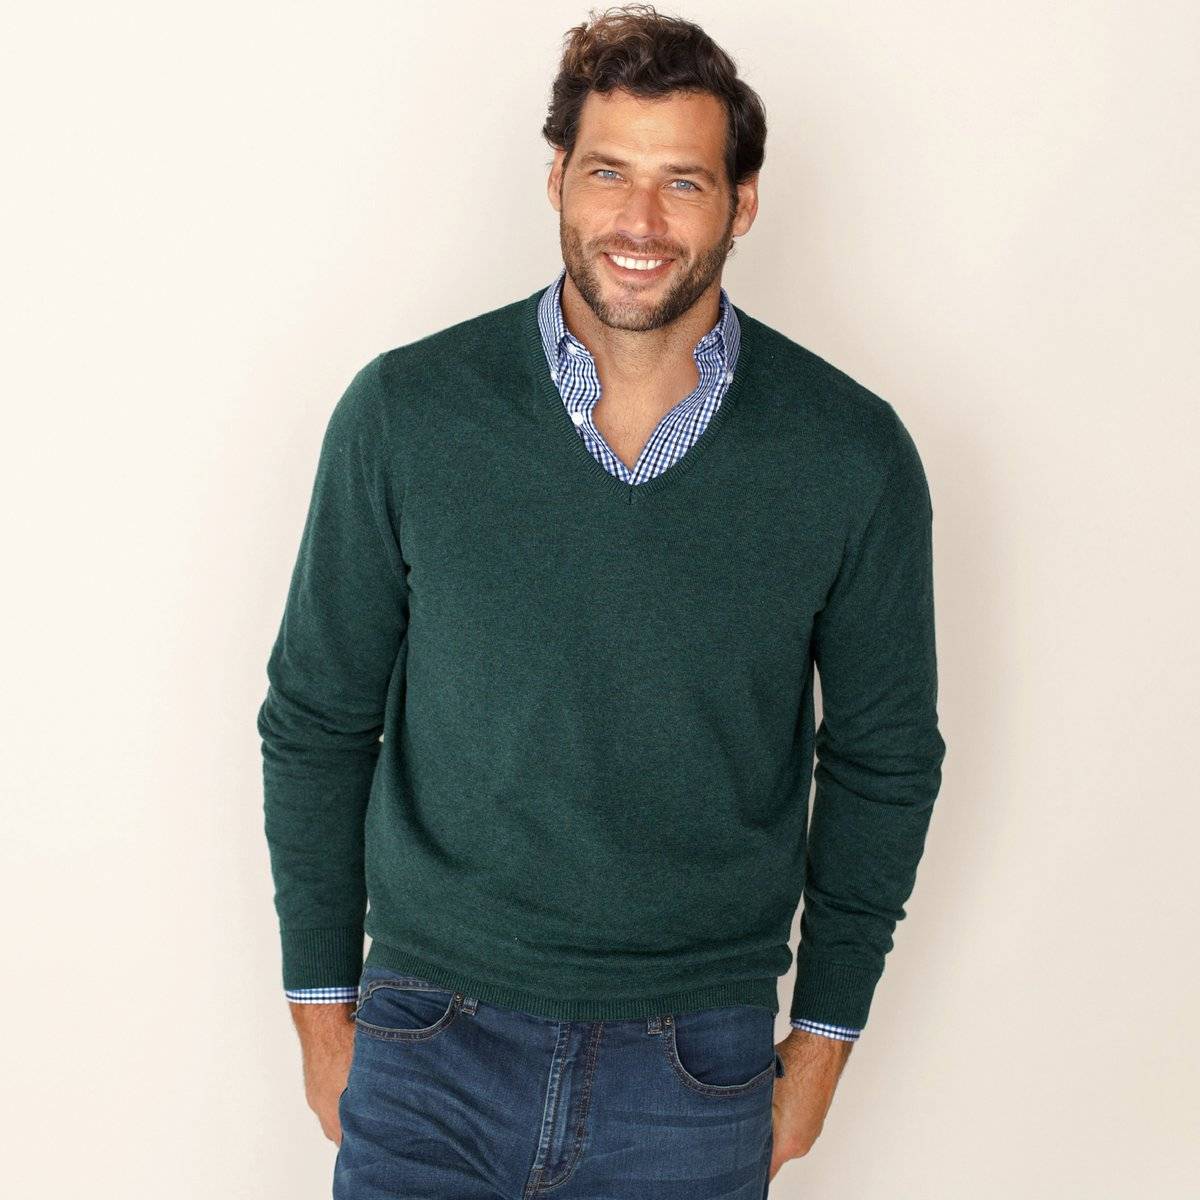 Как сочетать вместе штаны, кофту (свитер) и рубашку - правила стильного образа